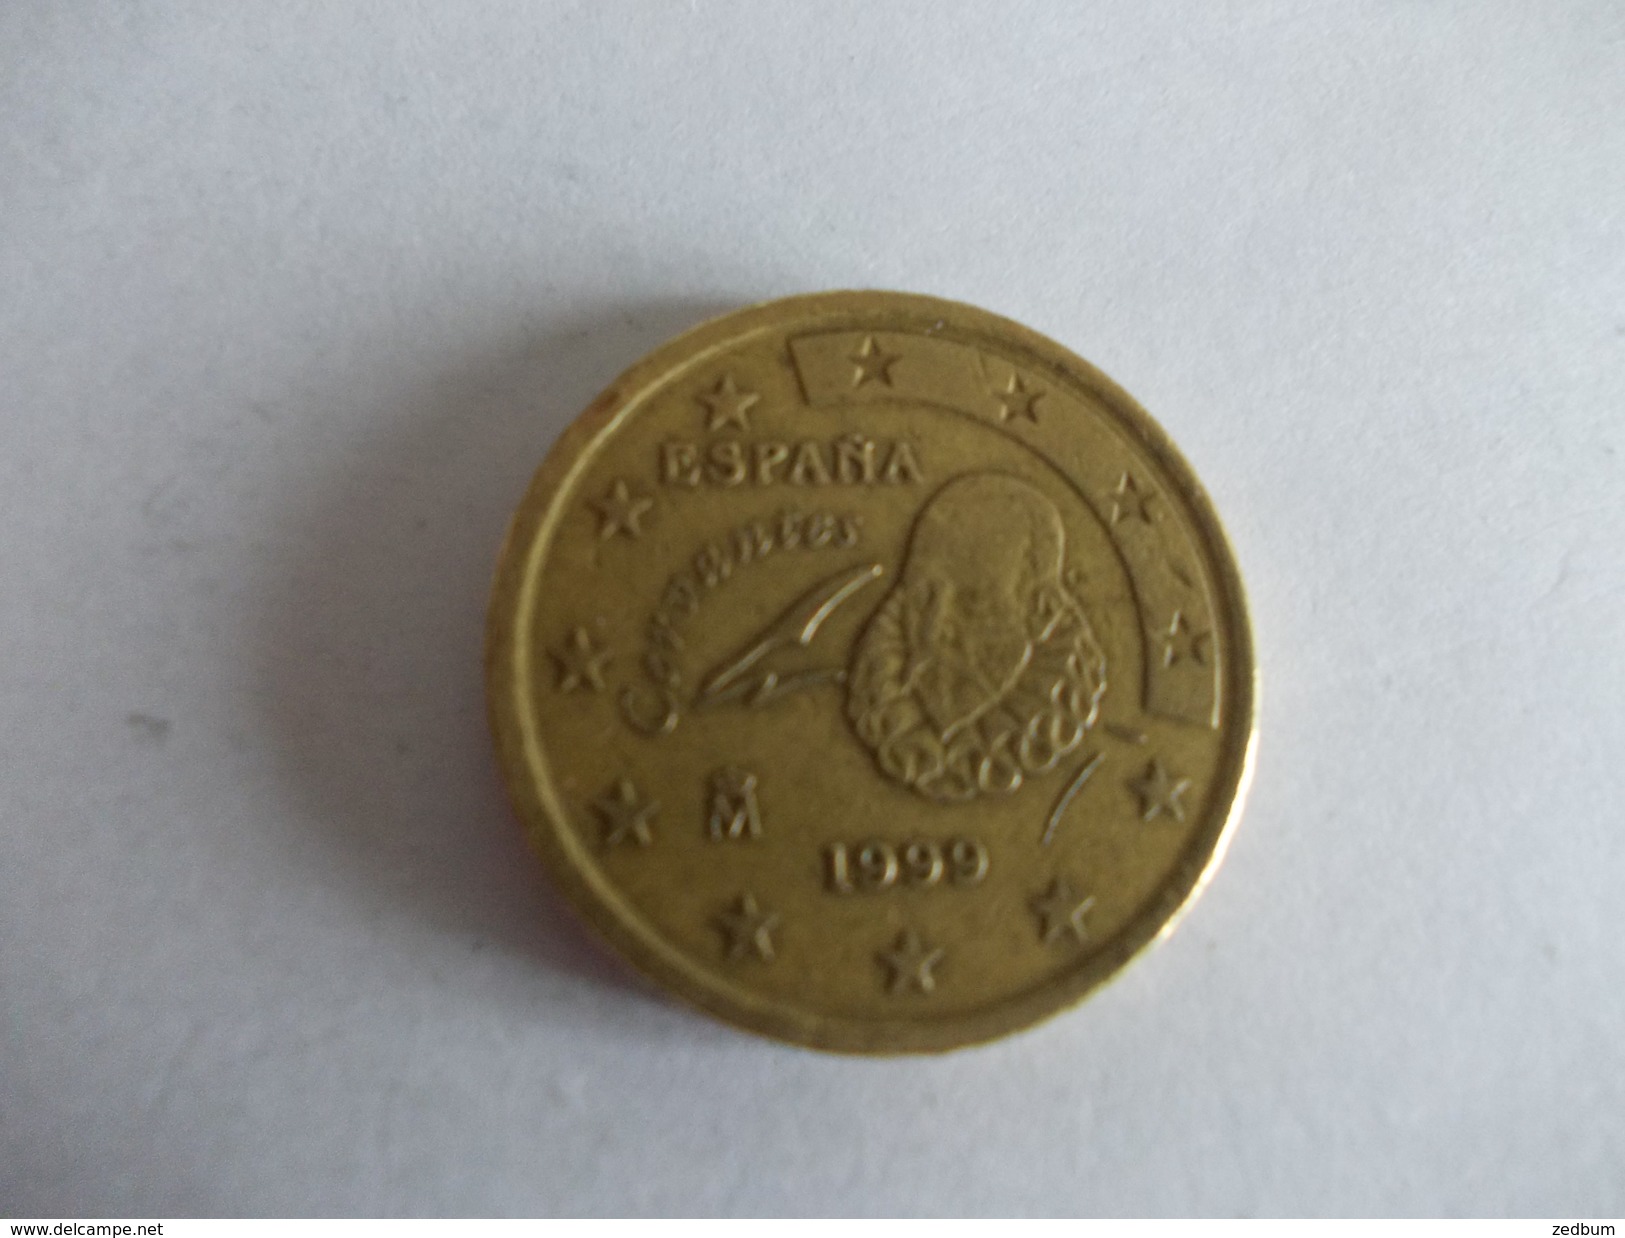 Monnaie Pièce De 50 Centimes D' Euro De Espagne Année 1999 Valeur Argus 1 &euro; - España